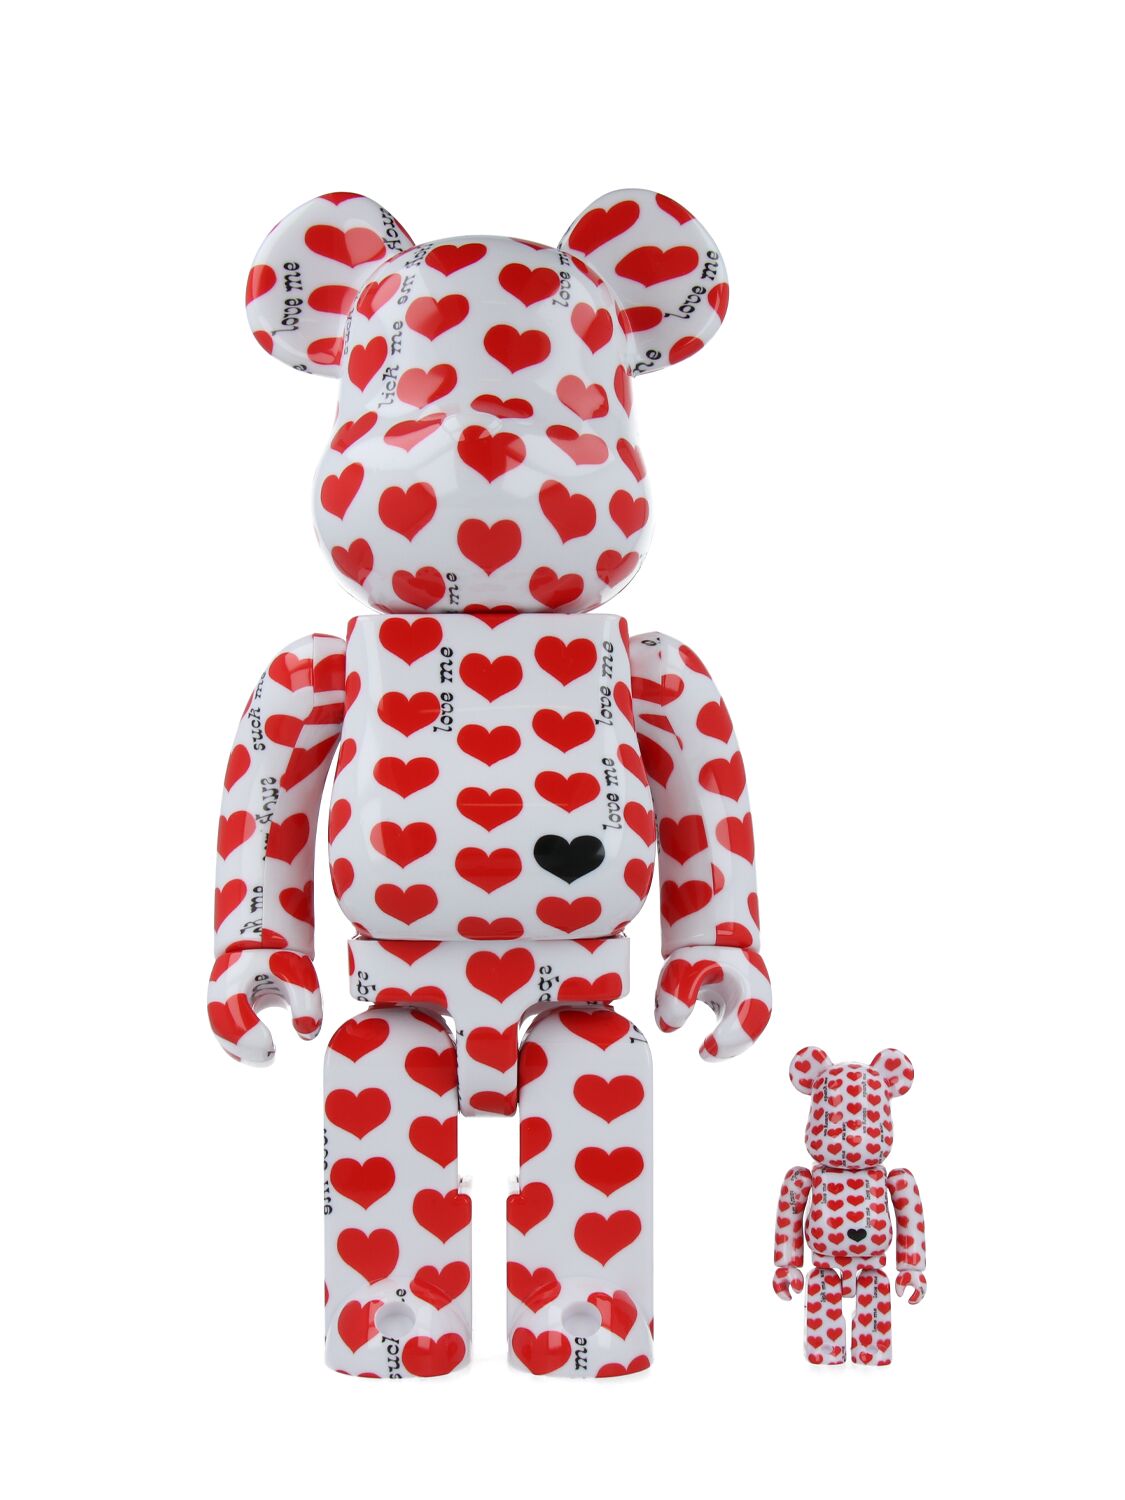 Medicom Toy Bearbrick 100 White Heart Toys In Red